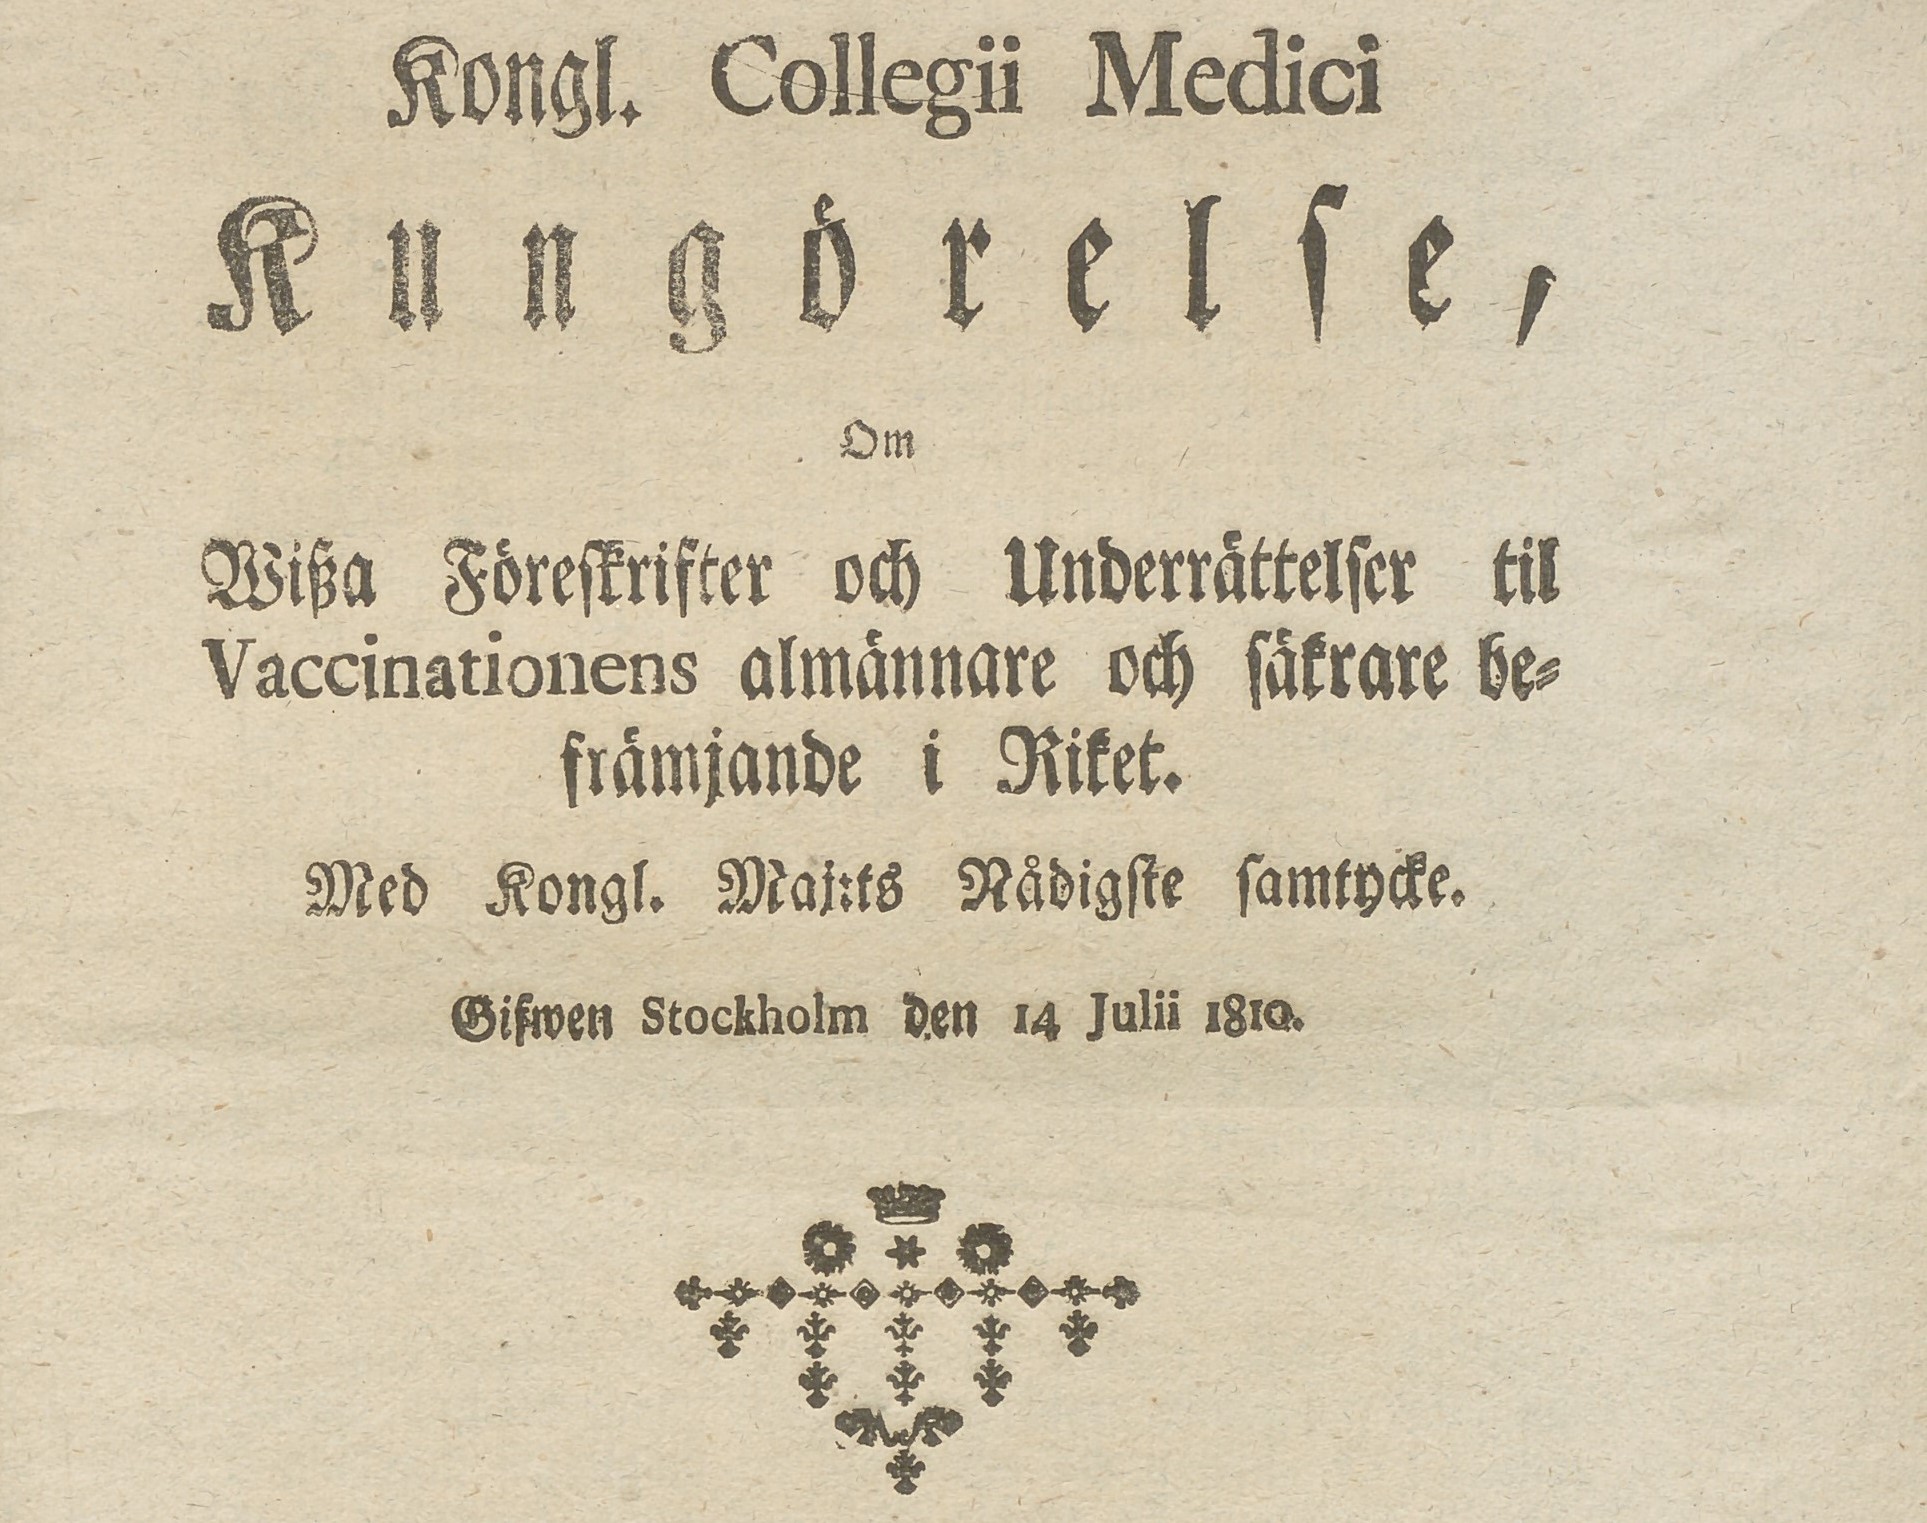 Frakturstil på lumppapper. Text: Kongl. Collegii Medici Kungörelse.